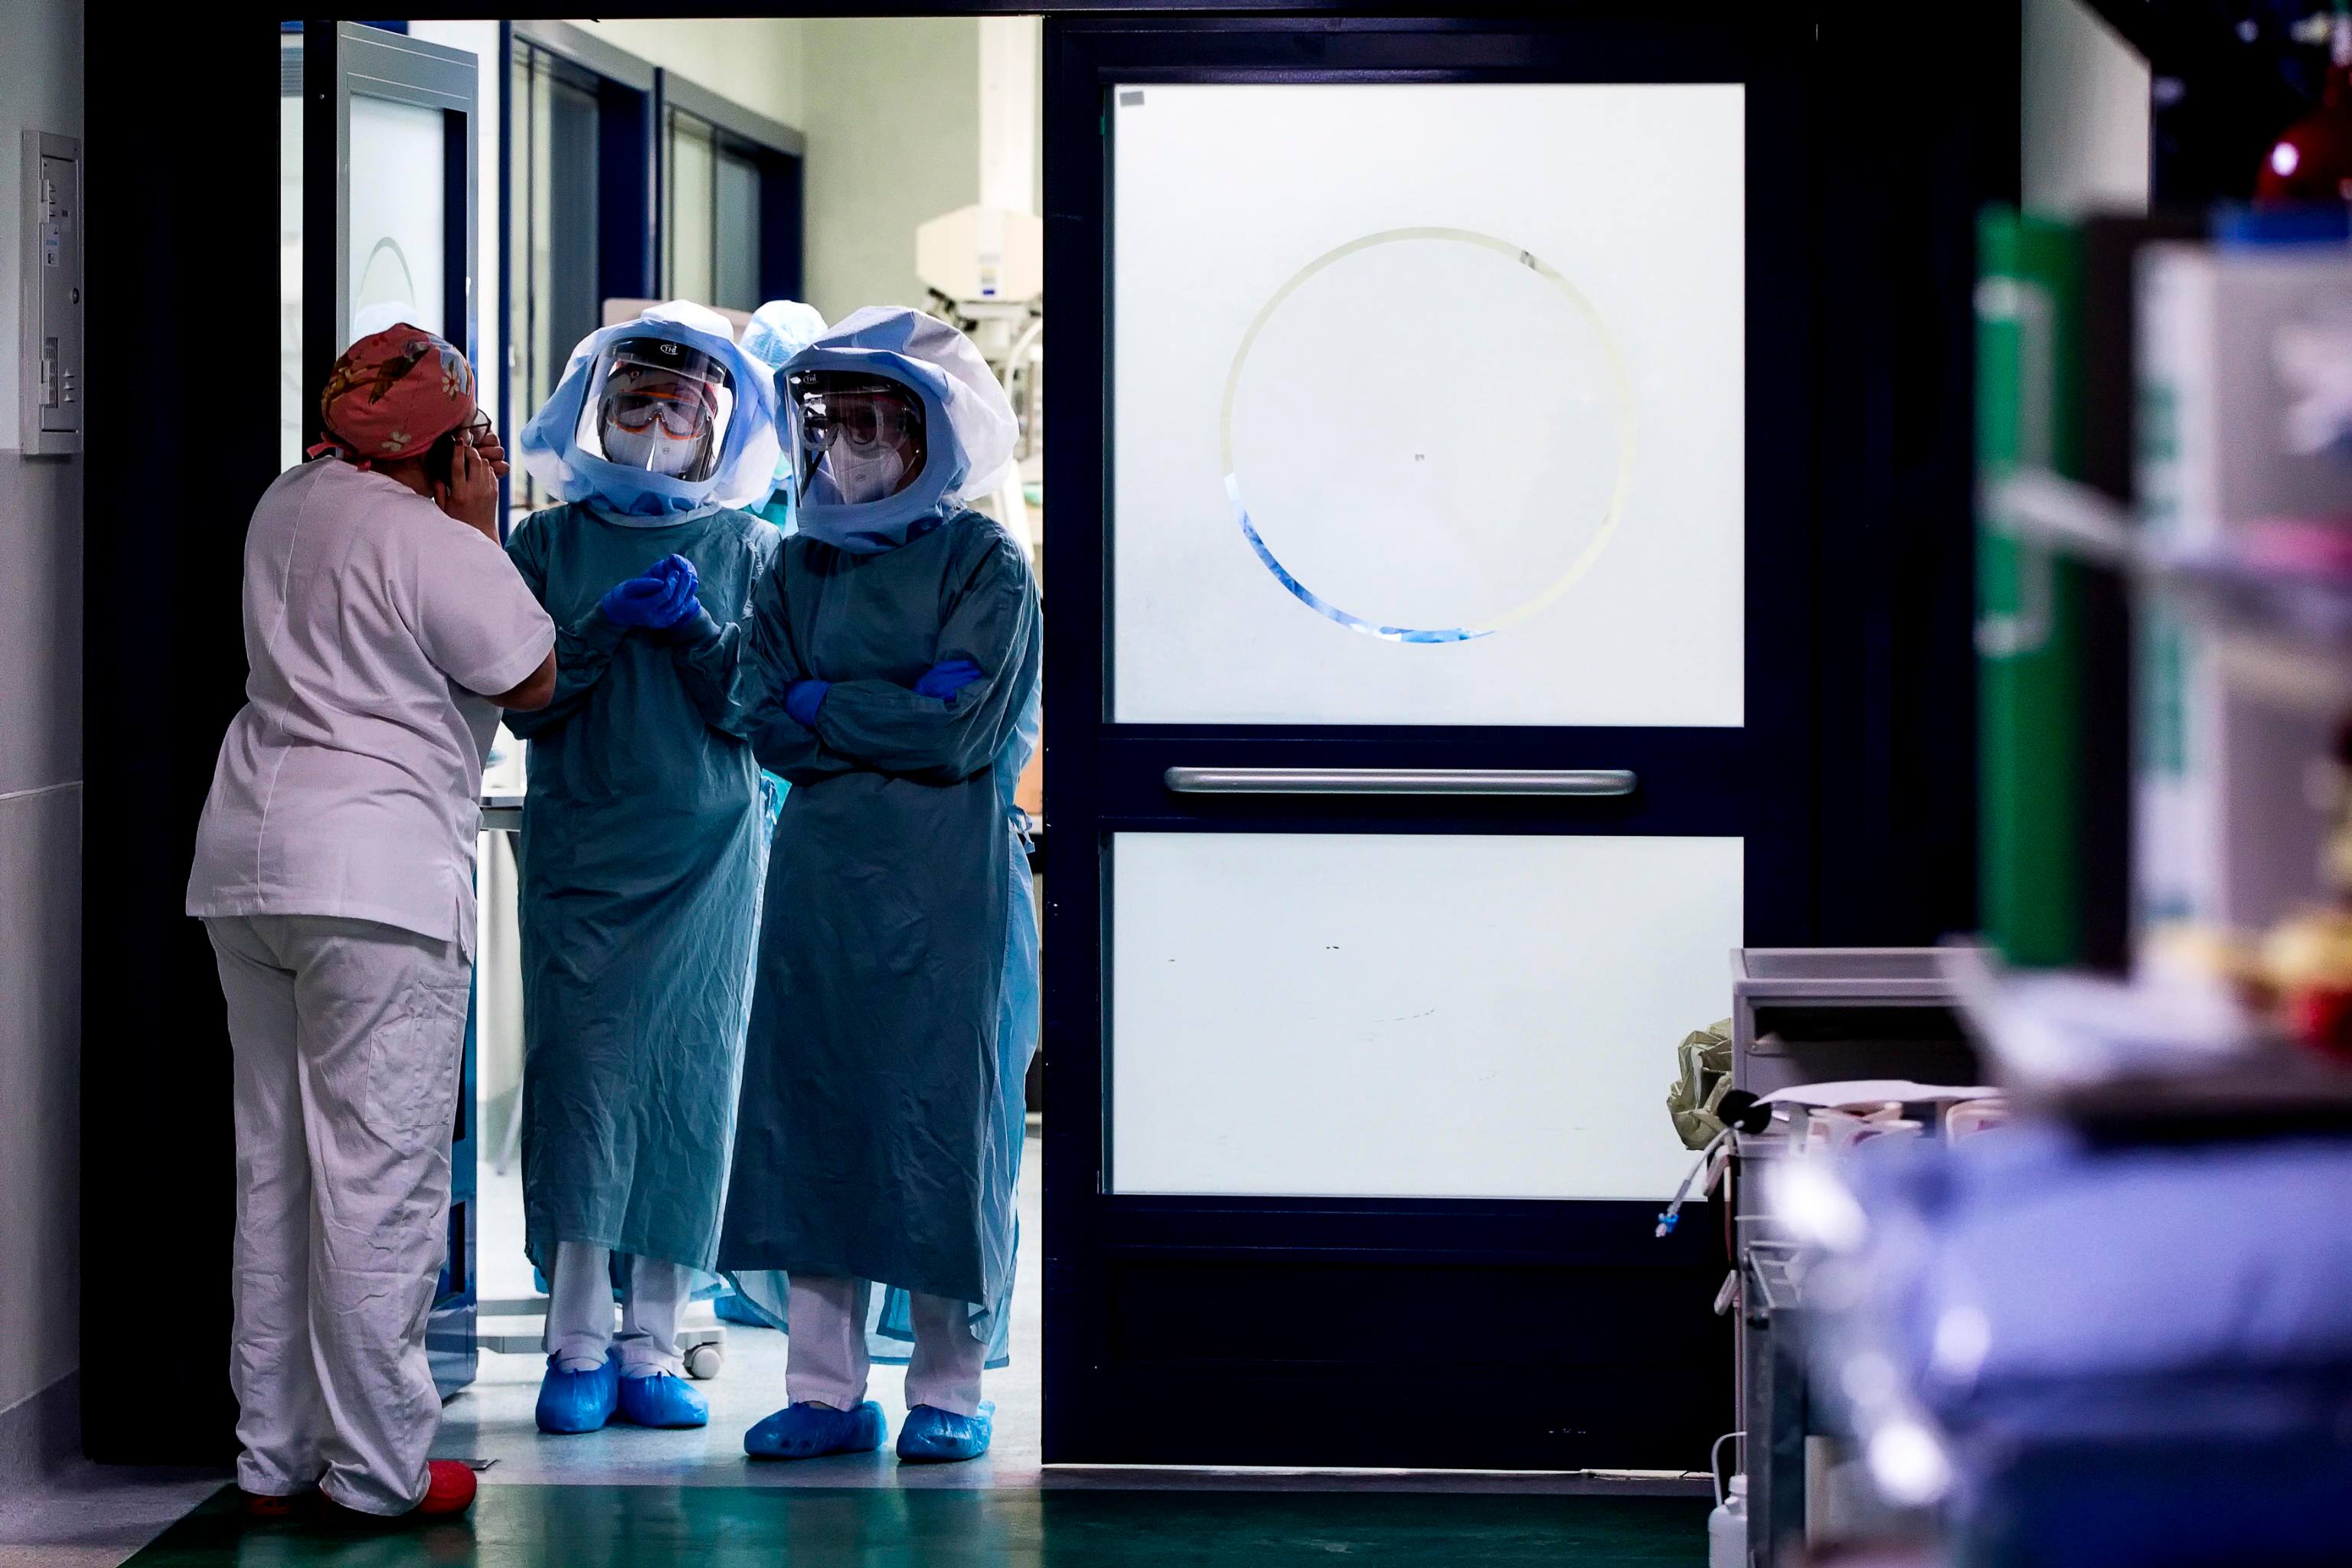 Medici ed infermieri nel reparto di terapia intensiva dellÕospedale Policlinico Tor Vergata, in video chiamata durante lÕemergenza per il Covid-19 Coronavirus, Roma, 11 aprile 2020. ANSA/ANGELO CARCONI